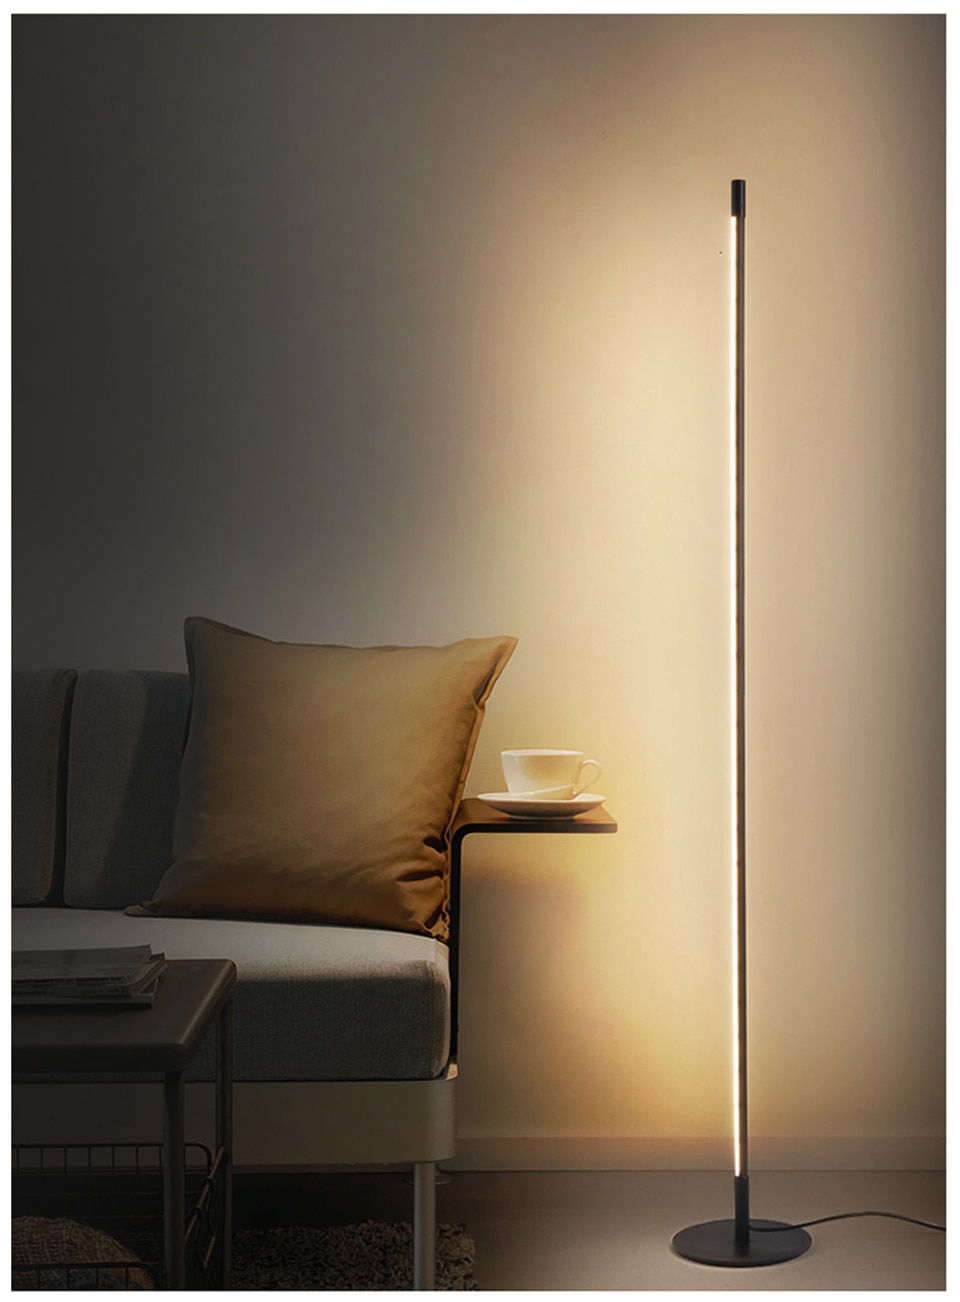 Modern Minimalist Floor Lamp LED Dimmable Floor Lights Nordic Living Room Bedroom Sofa Standing Lamp Indoor Decor Light Fixtures